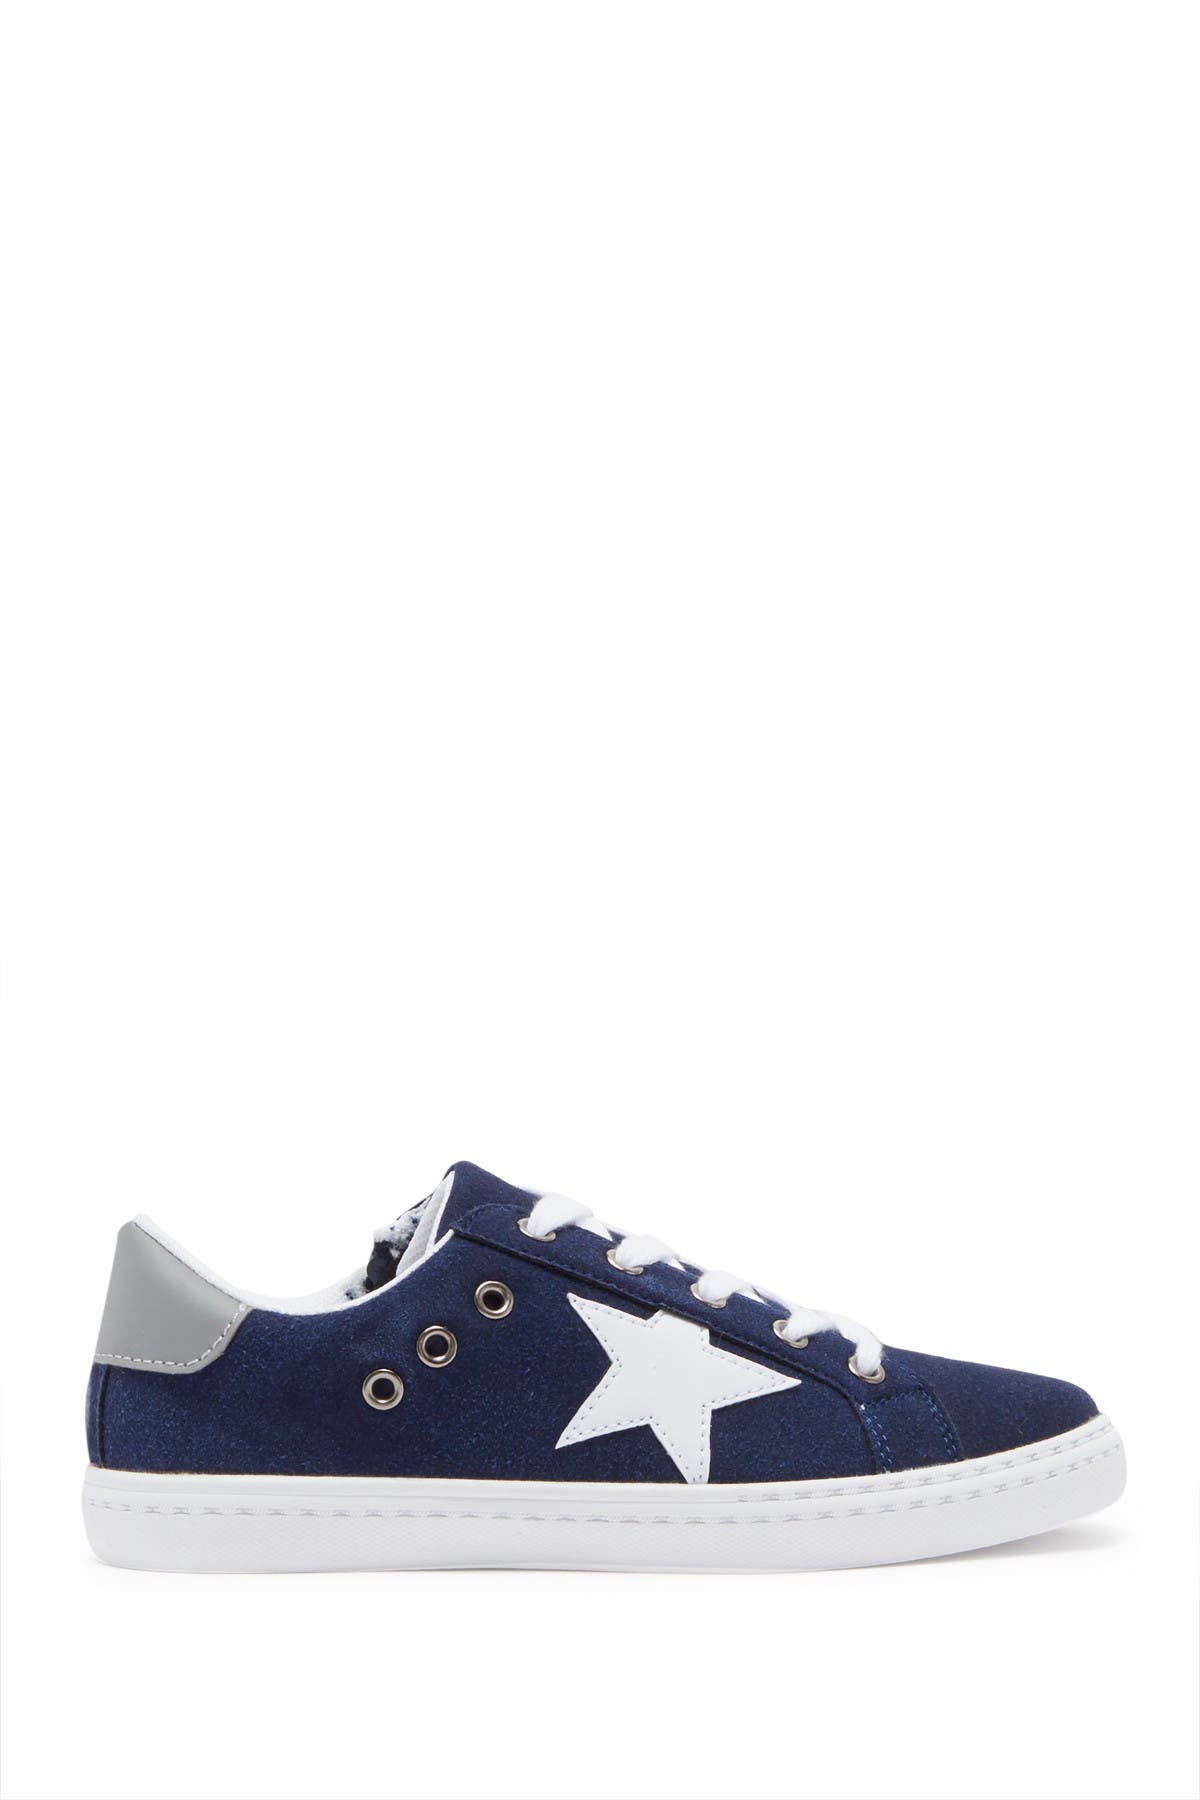 Hoo Kids' Mia Star Sneaker In Navy5